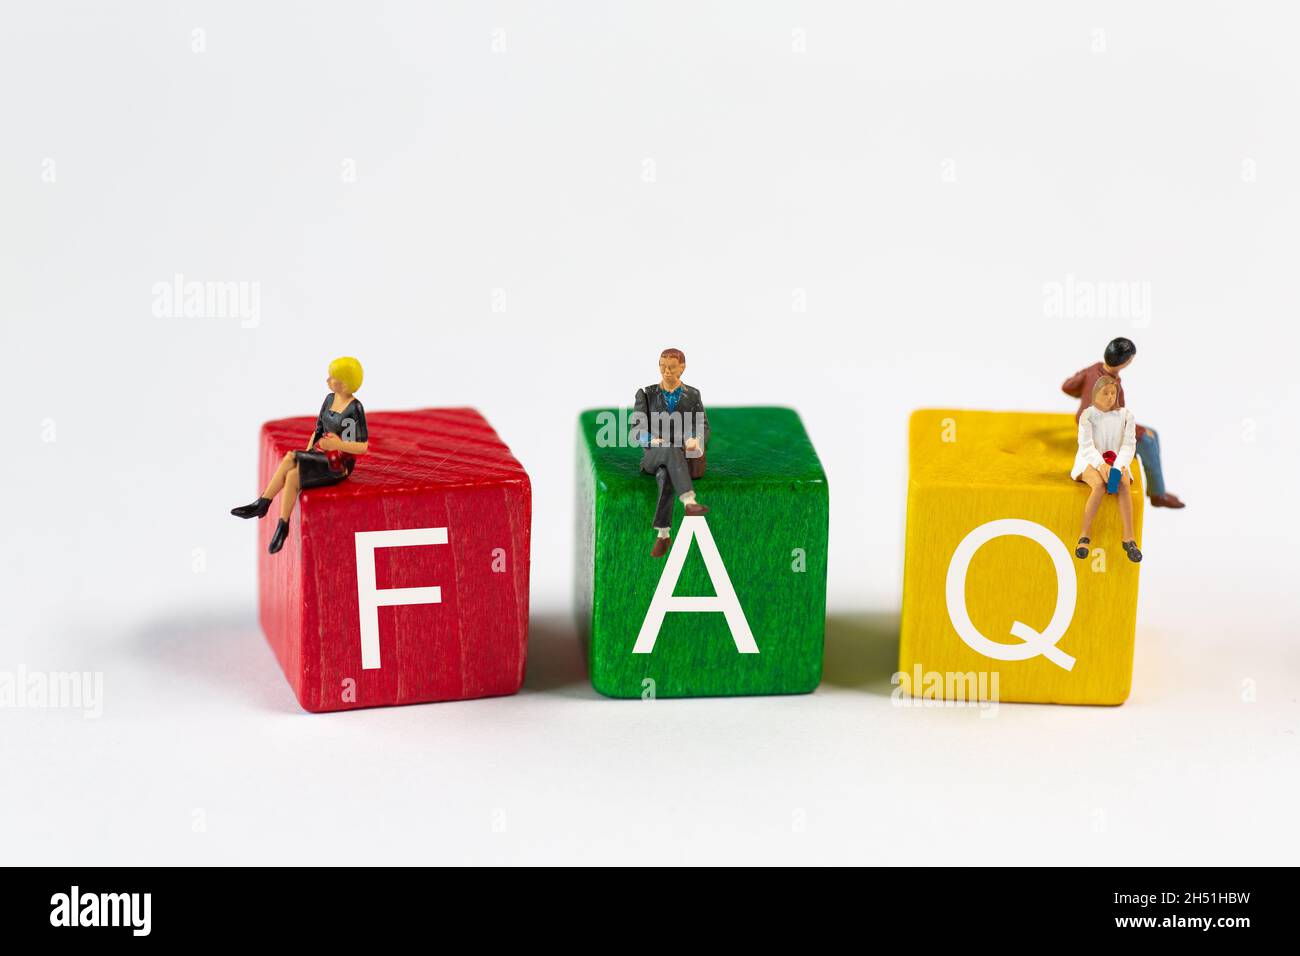 FAQ - die Abkürzung für Frequently Asked Questions ist in weißer Schrift auf roten, grünen und gelben Bausteinen. Kleine Plastikfiguren sitzen auf den Blöcken Stockfoto